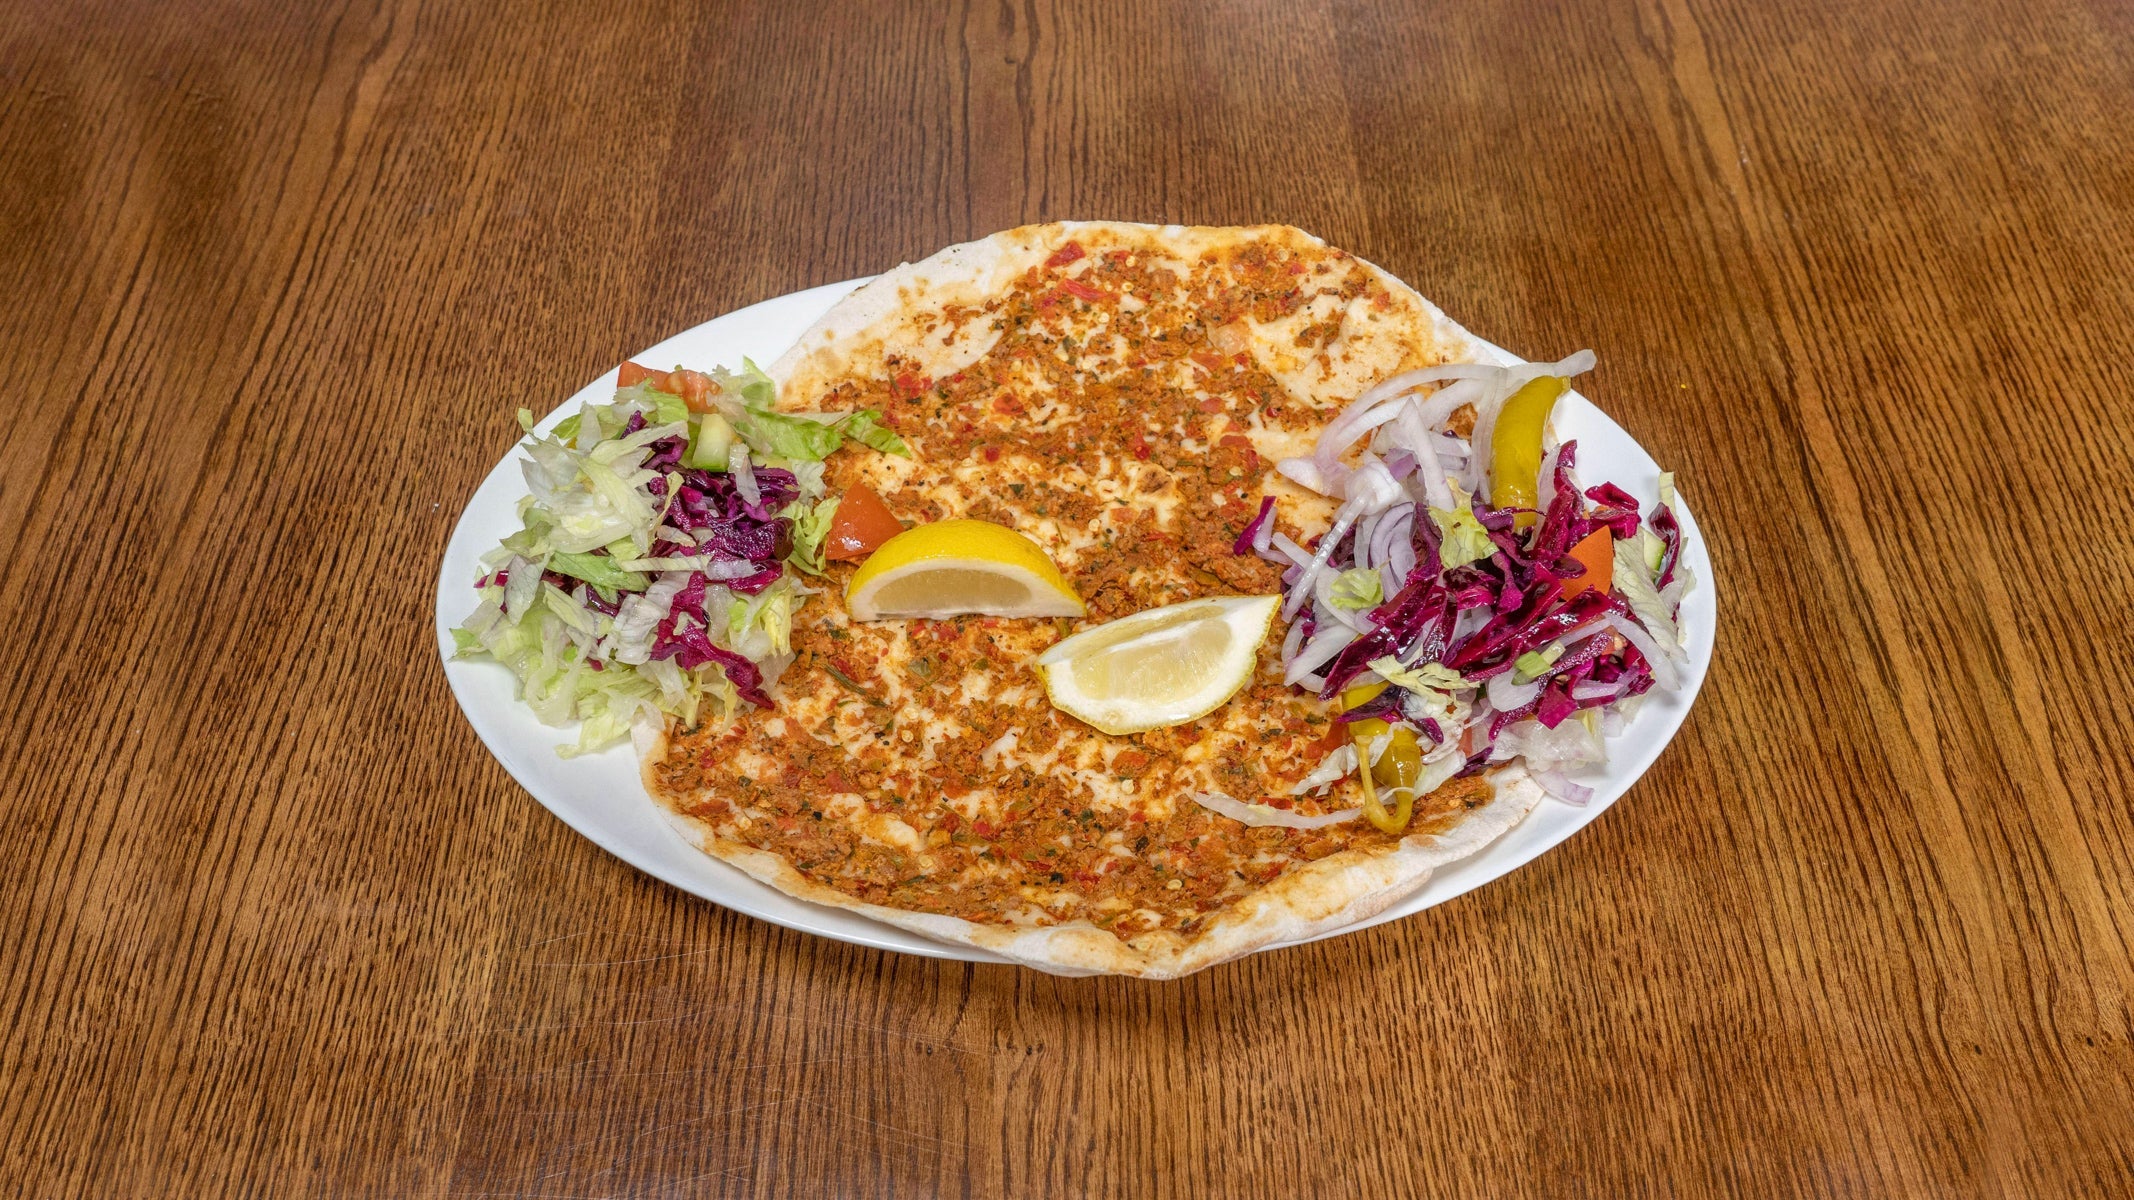 Marmaris Kebab House & Fish Bar